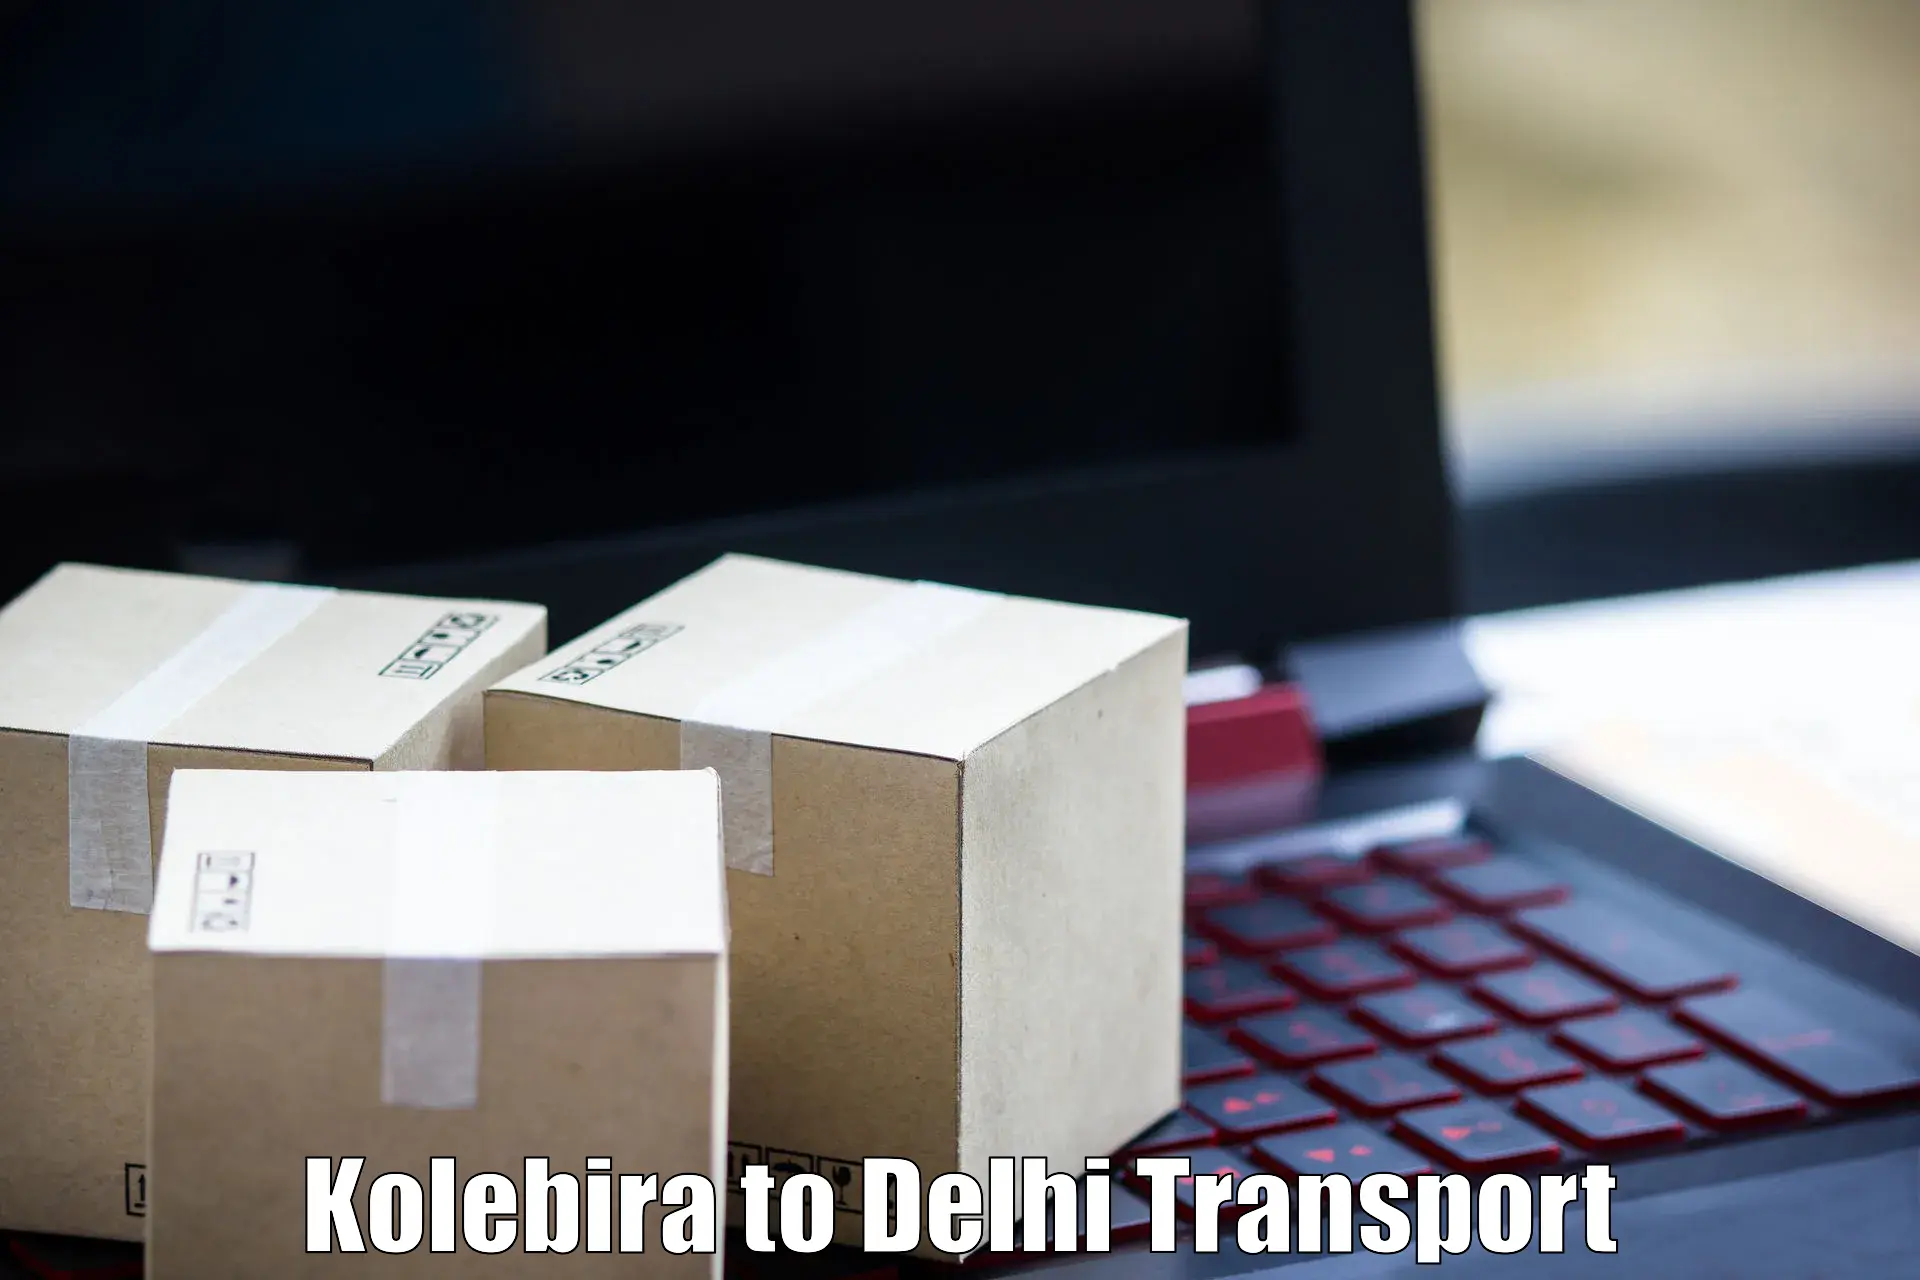 Delivery service Kolebira to Jhilmil